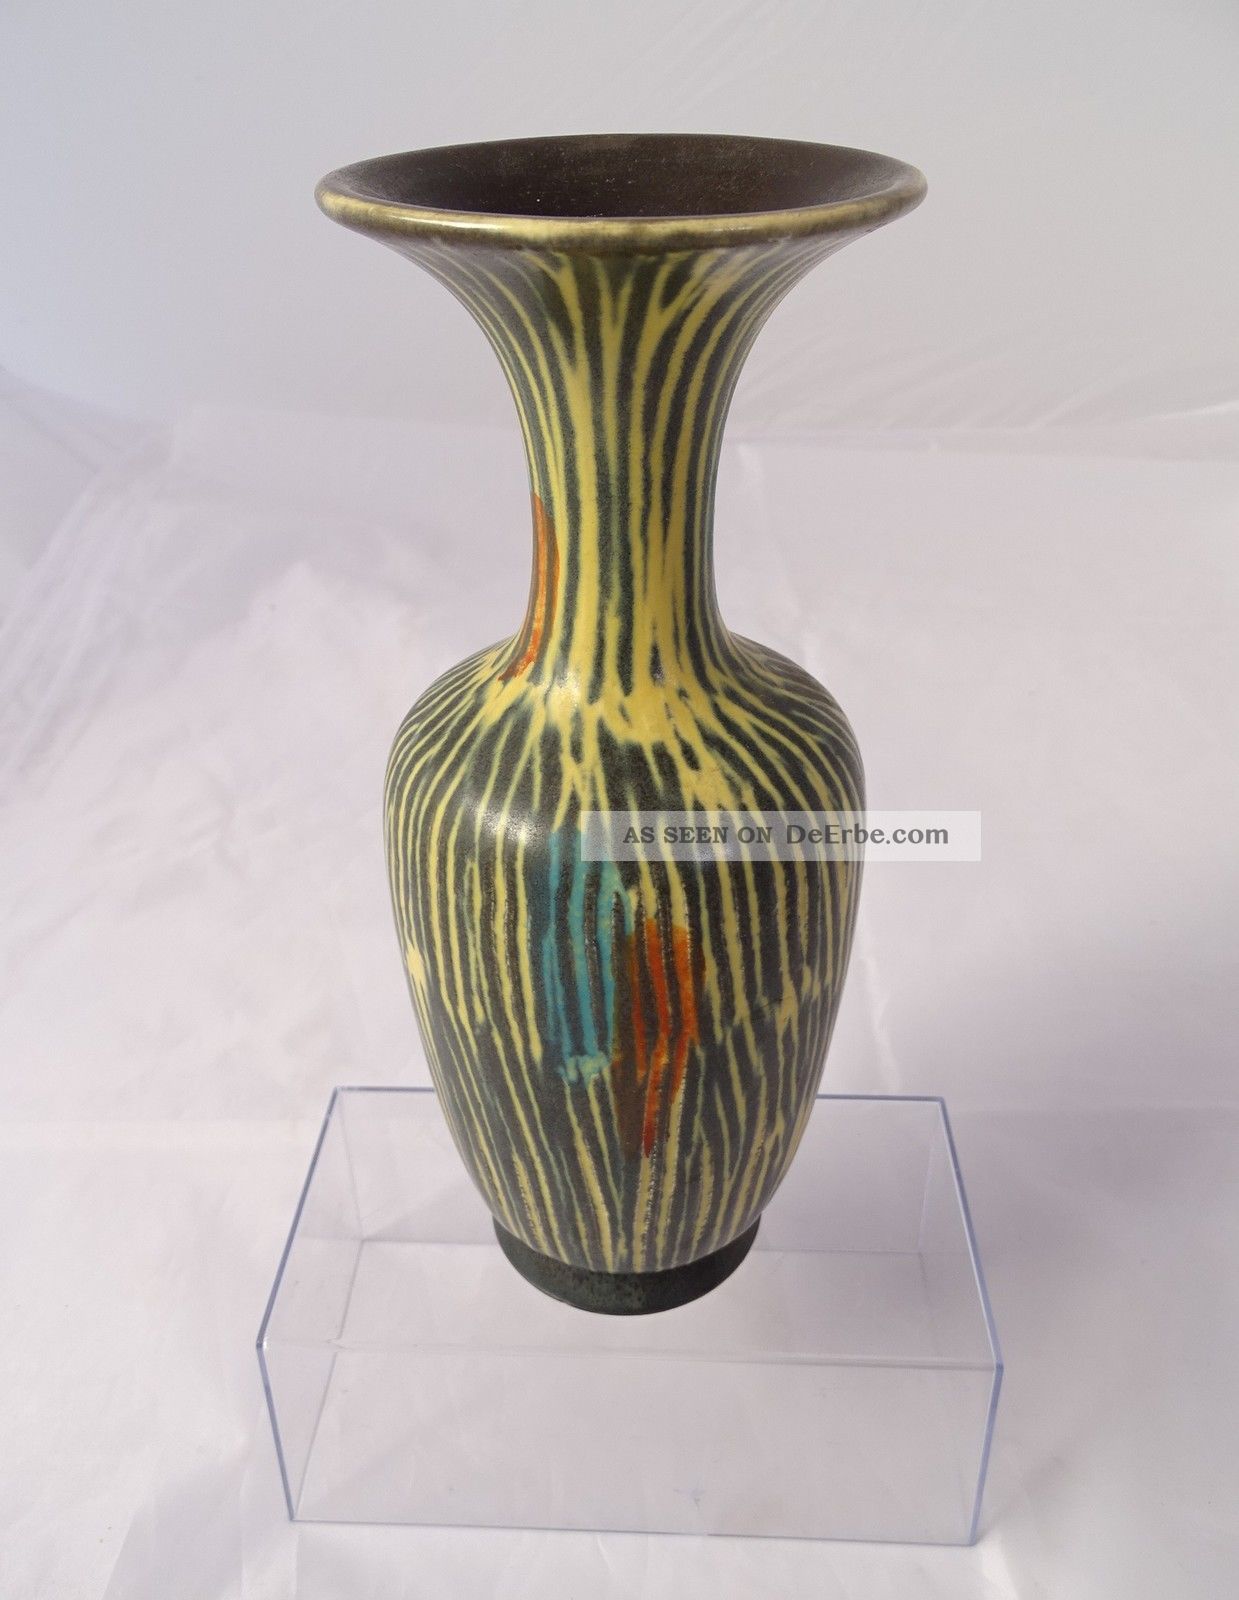 Ausgefallene Design Keramik Vase 50er Jahre 50s Rarität Tolle Farben 20 Cm 1950-1959 Bild